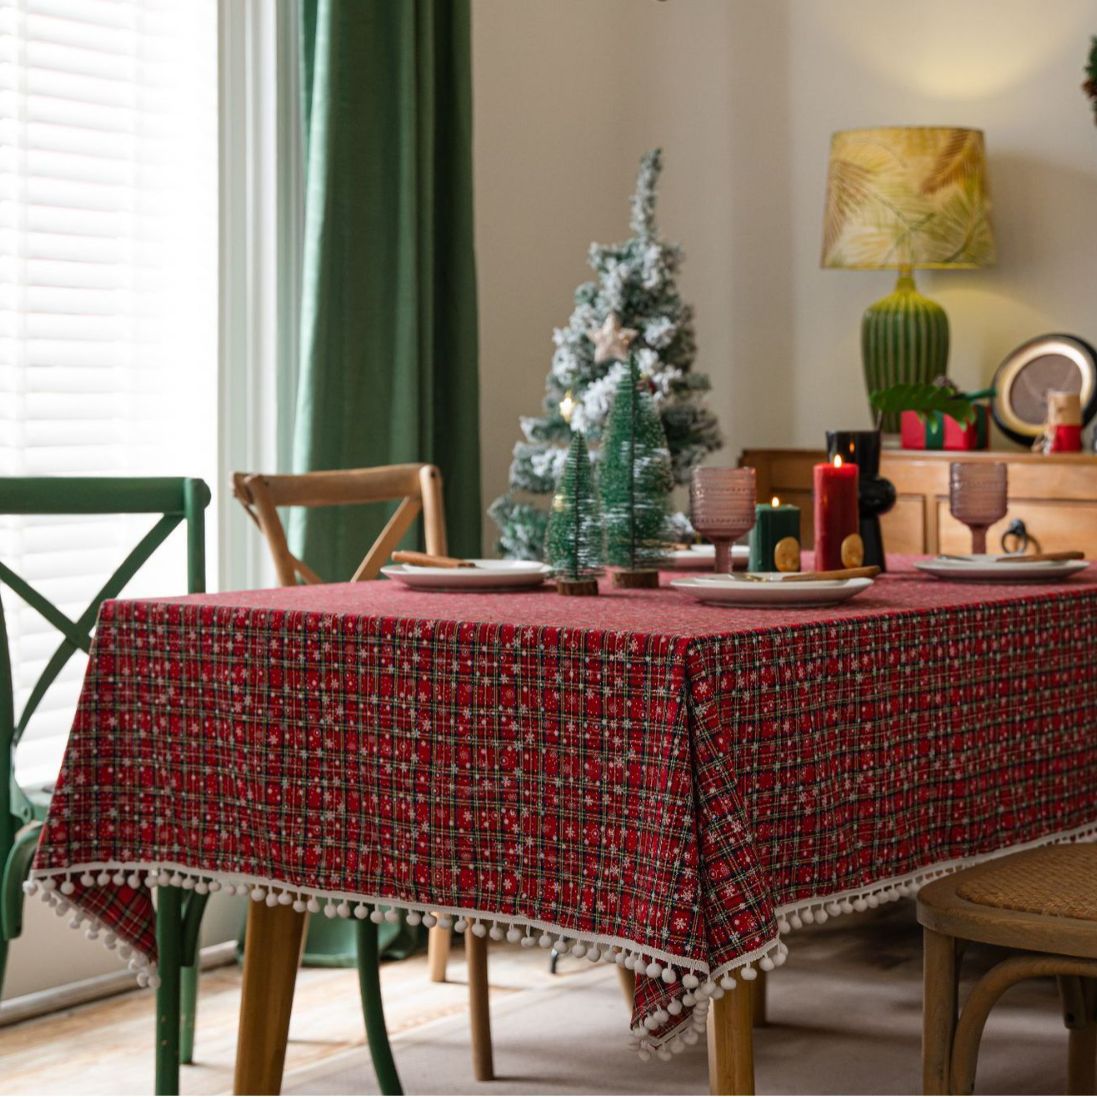 伊缦琪韵桌布色织格子红色圣诞节日餐桌布美式布艺长方形厂家直供